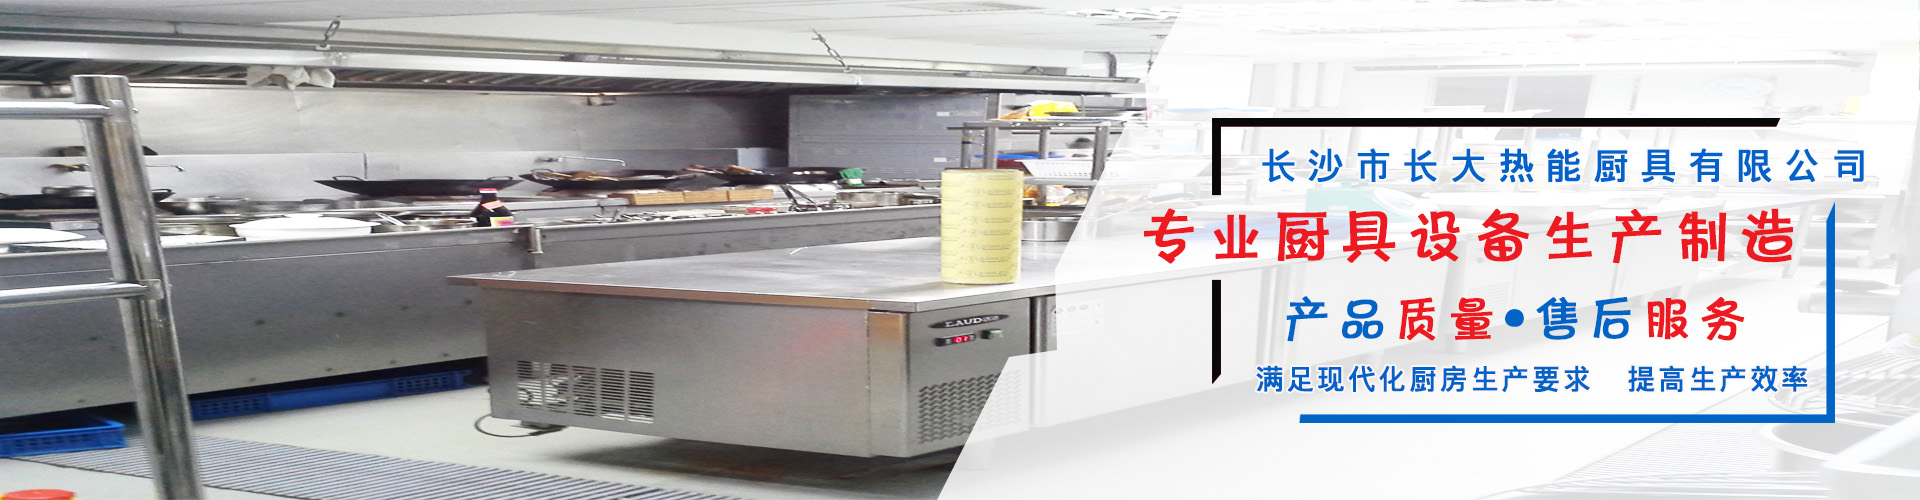 山东湖南厨具设备厂家购买富海360一套SEO软件